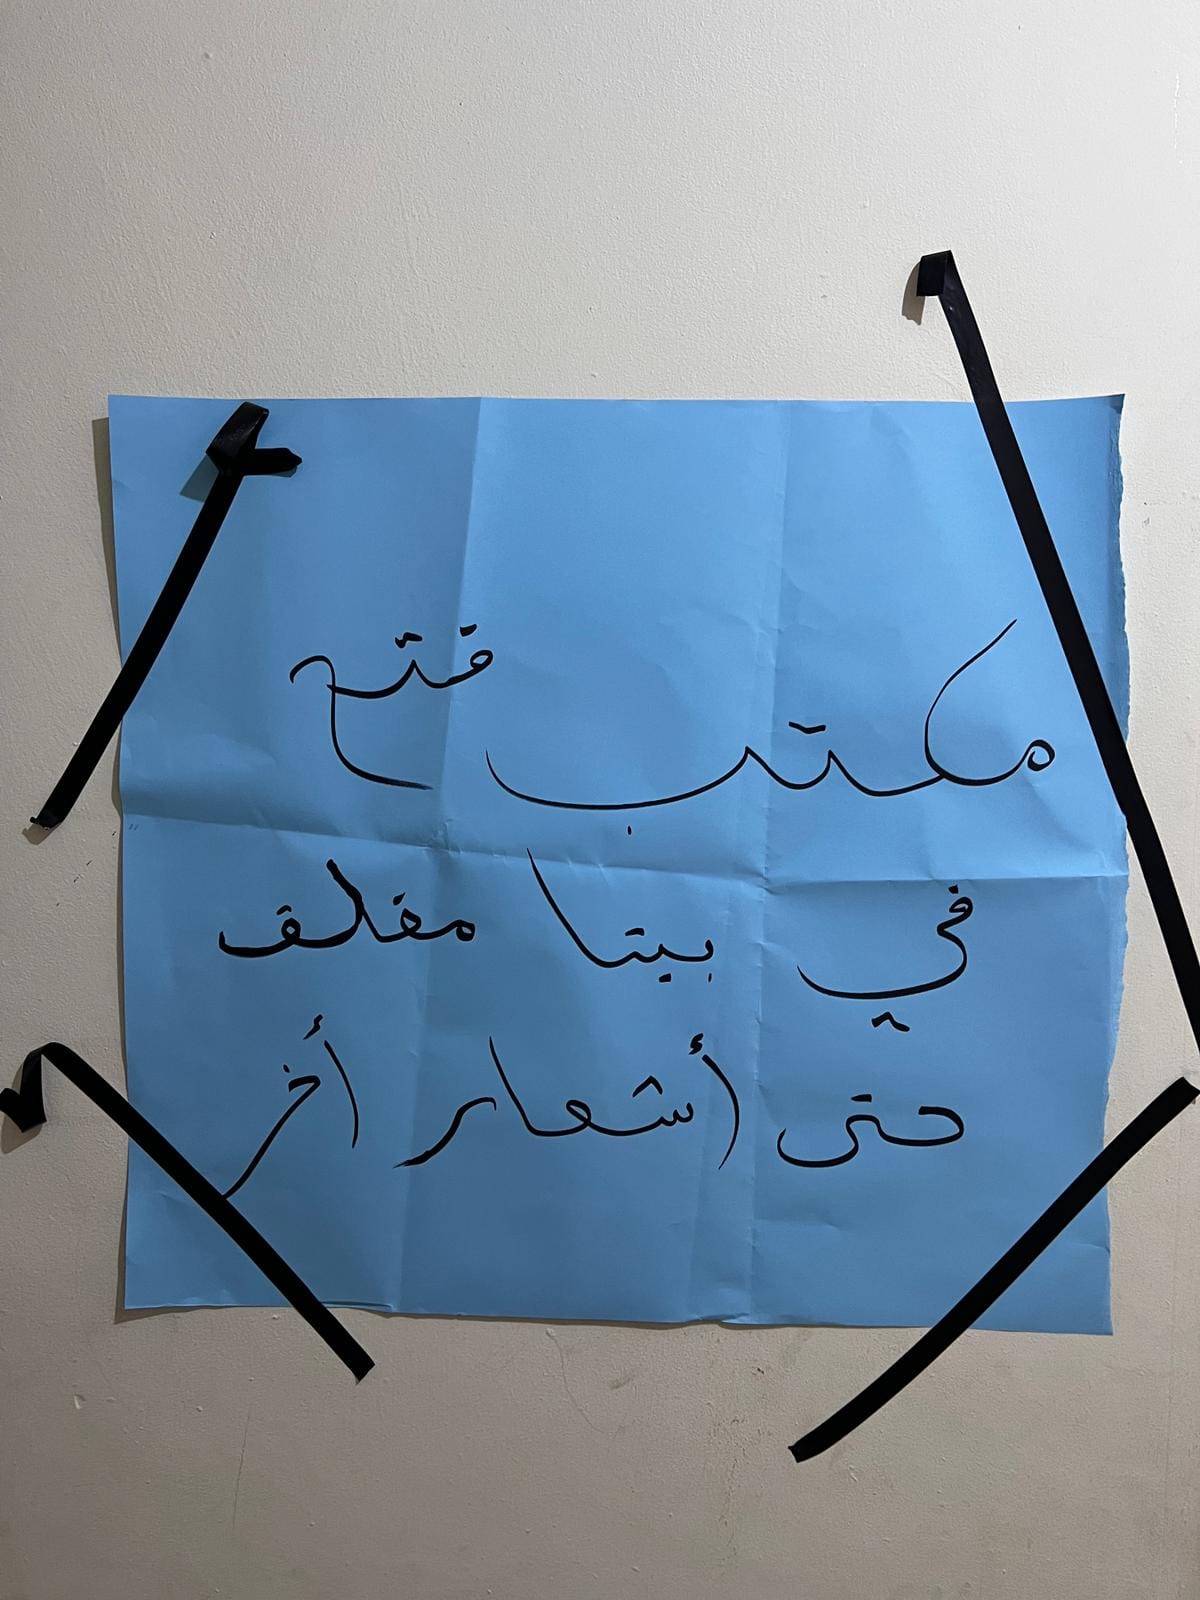 إغلاق مقر حركة فتح في بيتا إلى إشعار آخر